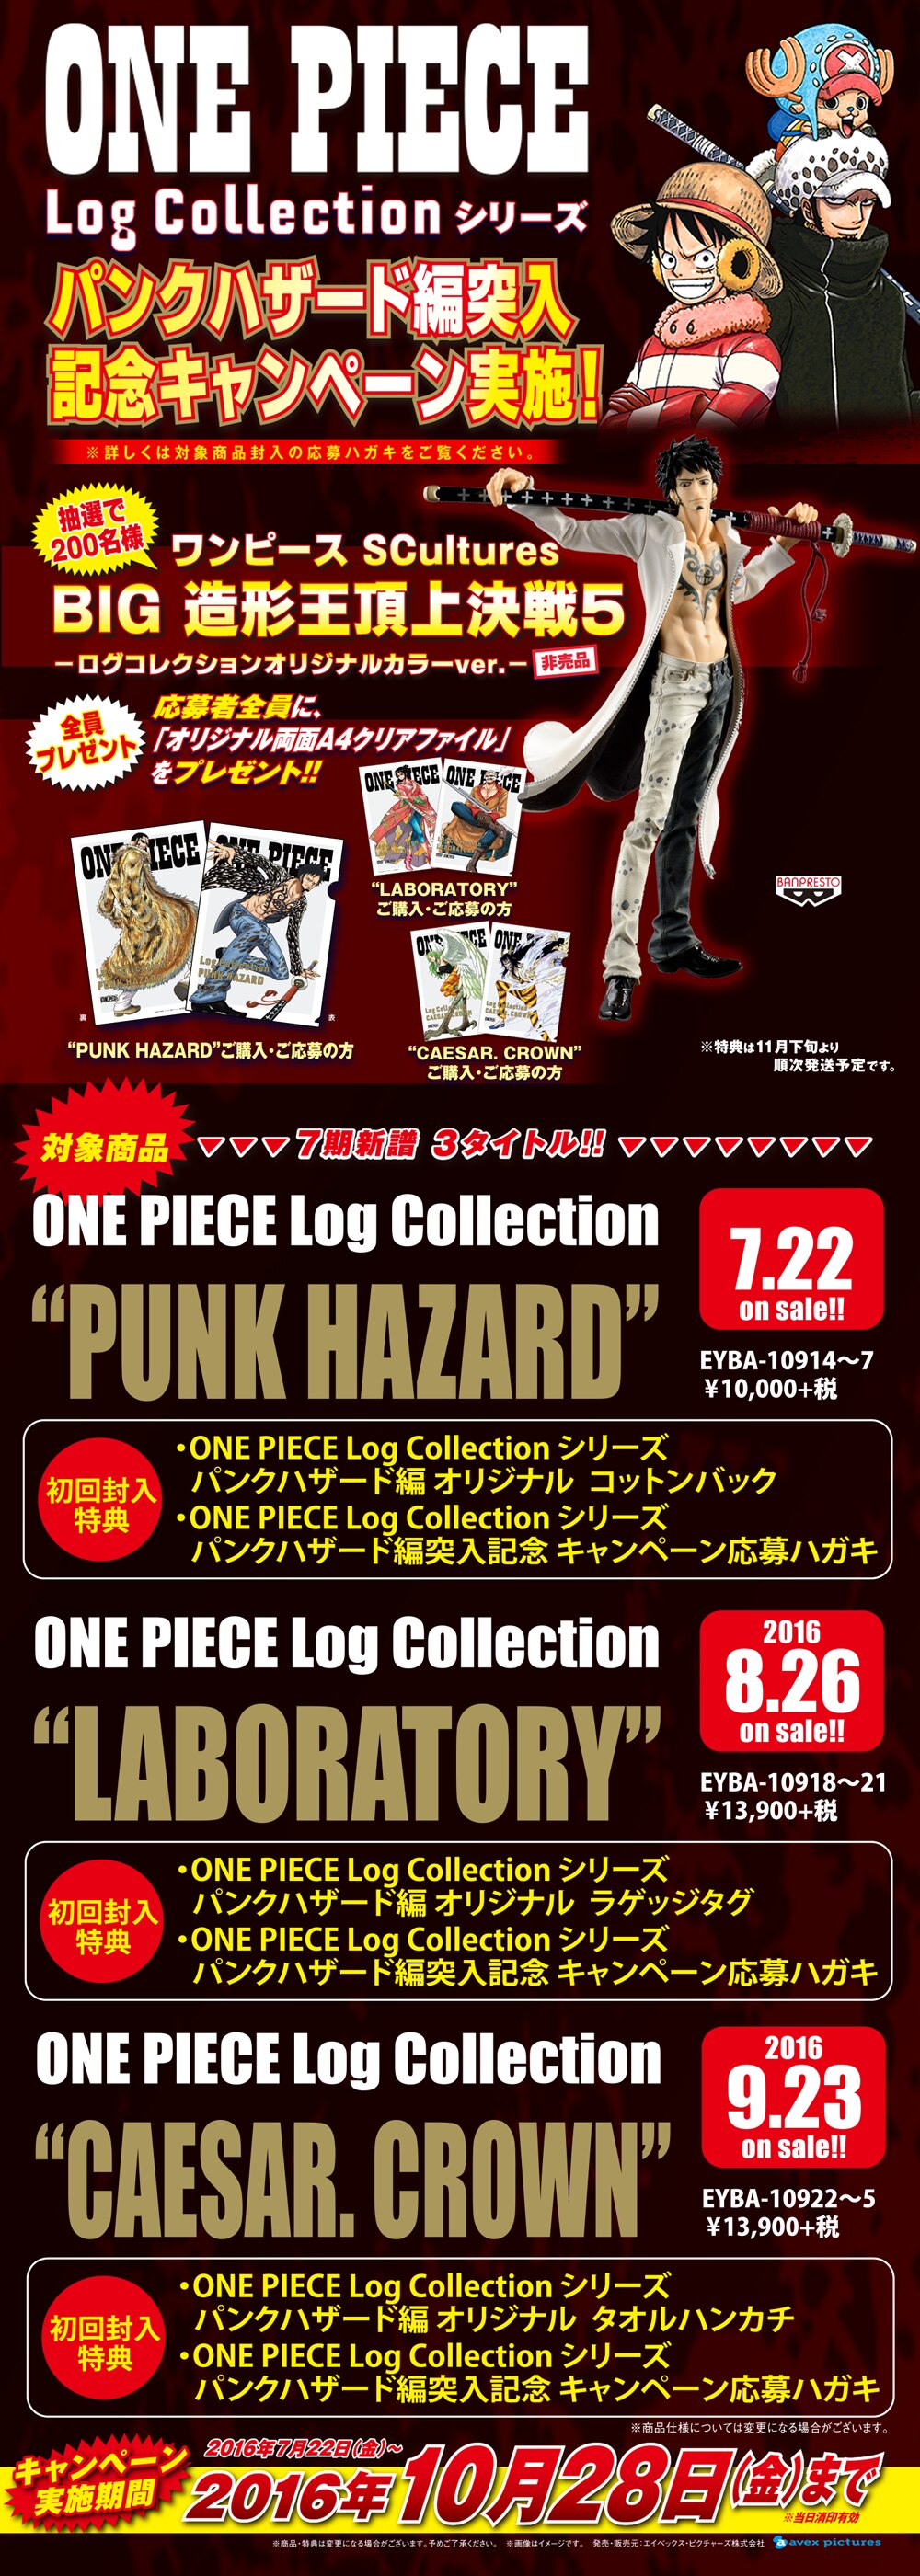 Log Collection シリーズ パンクハザード編 突入記念キャンペーン実施 News One Piece ワンピース Dvd公式サイト